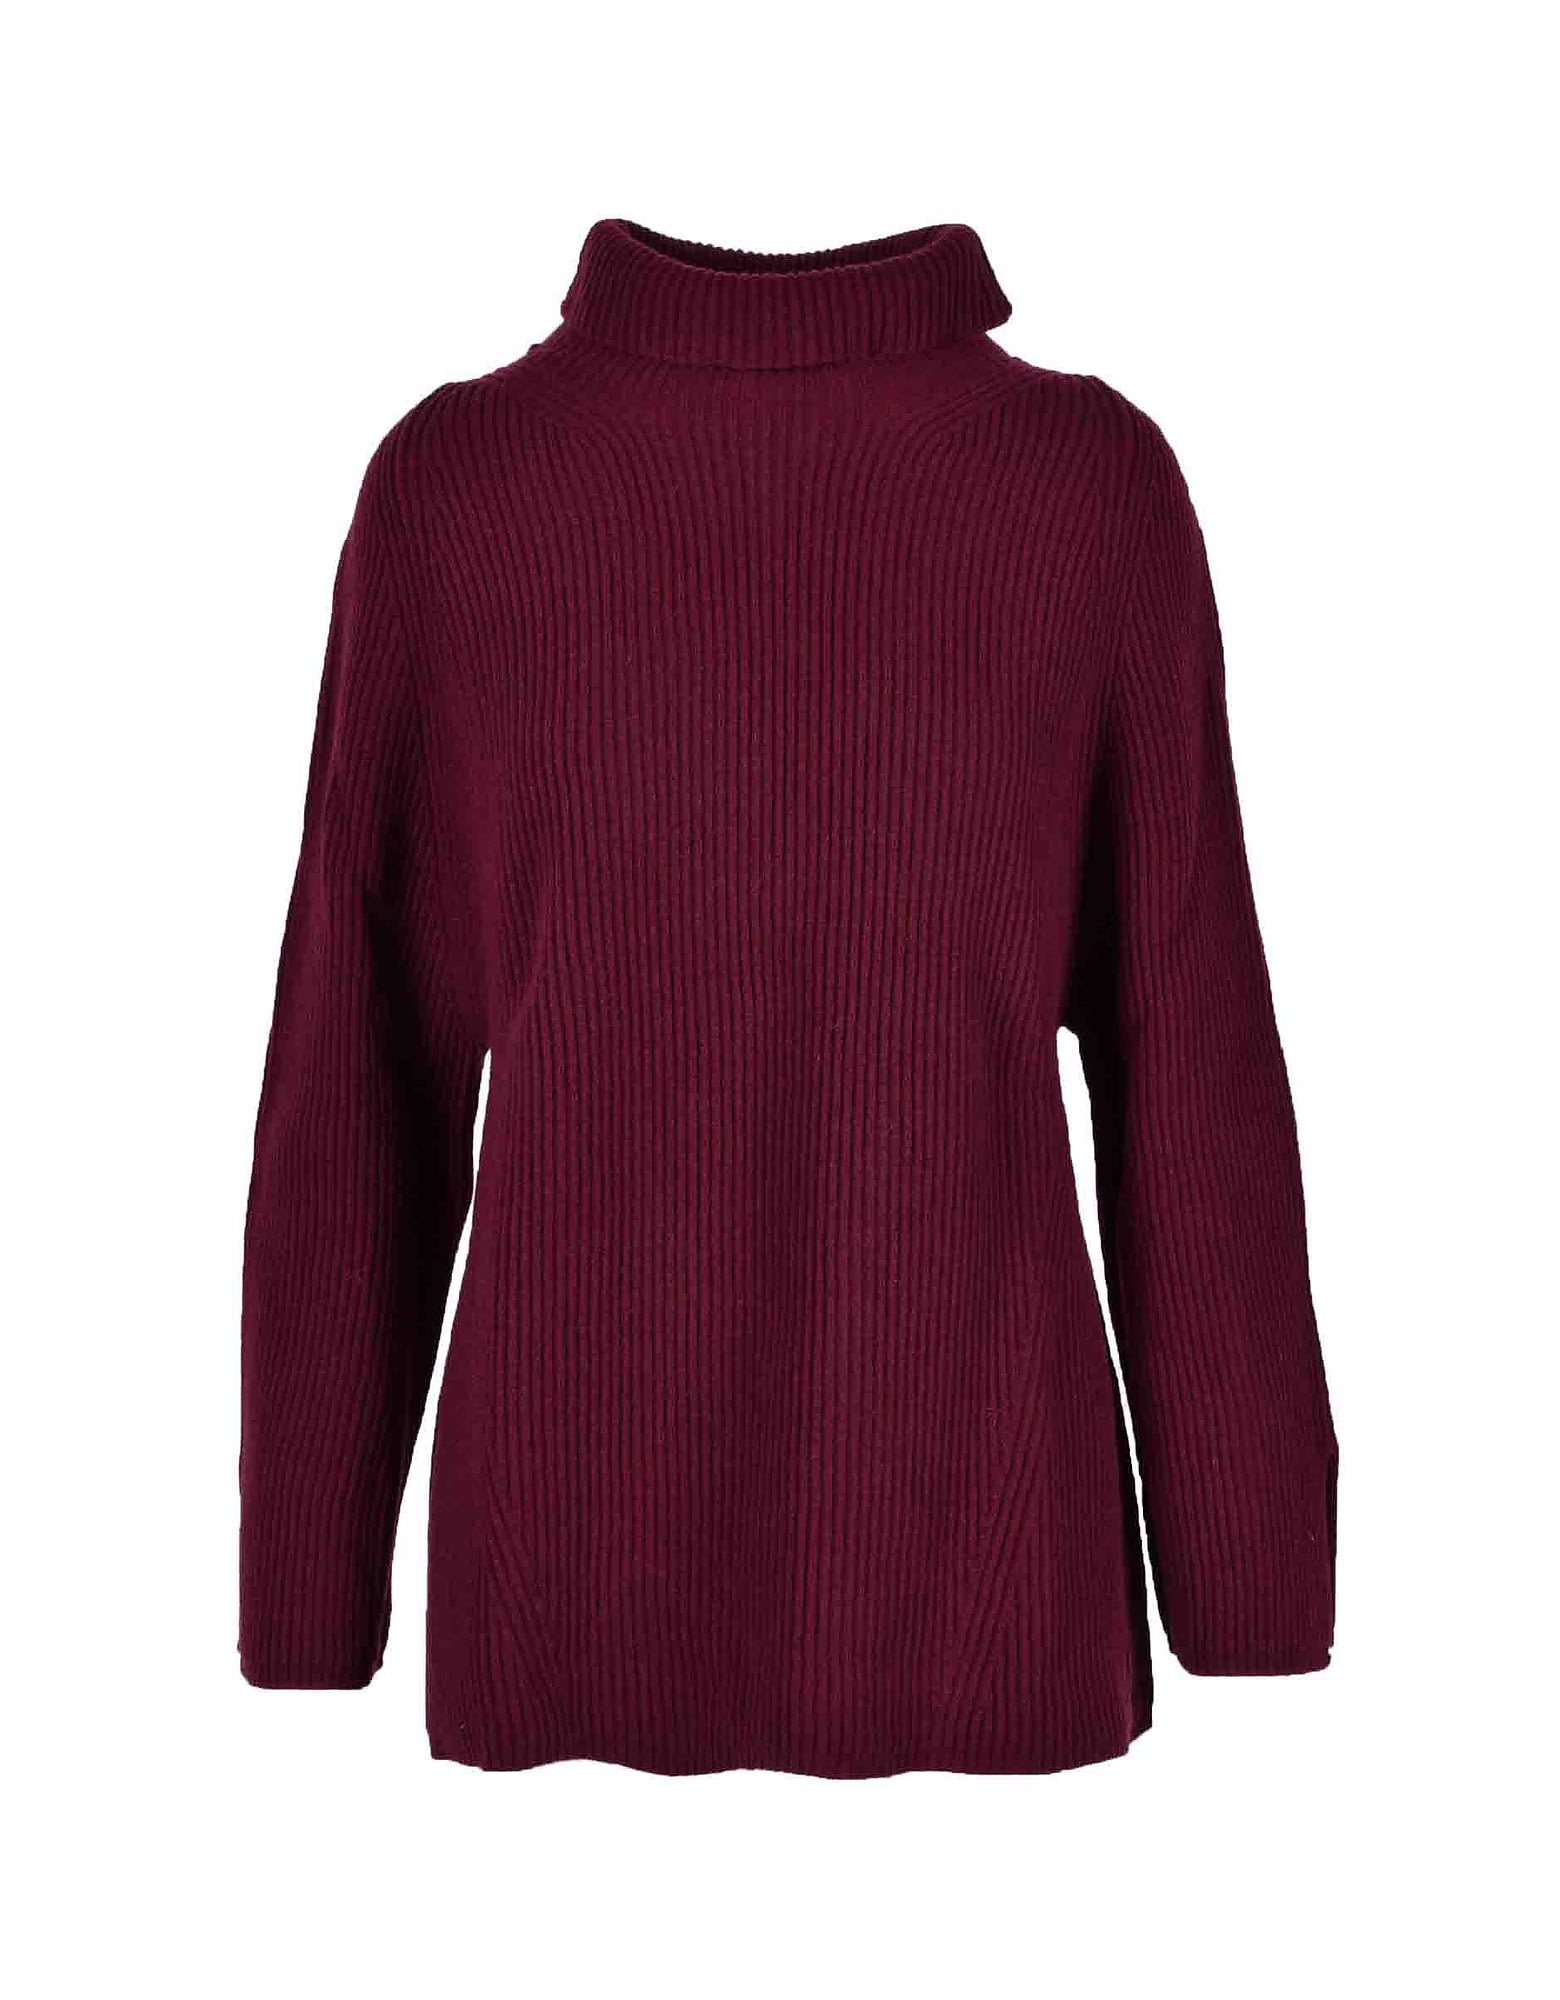 Max Mara Womens Bordeaux Sweater